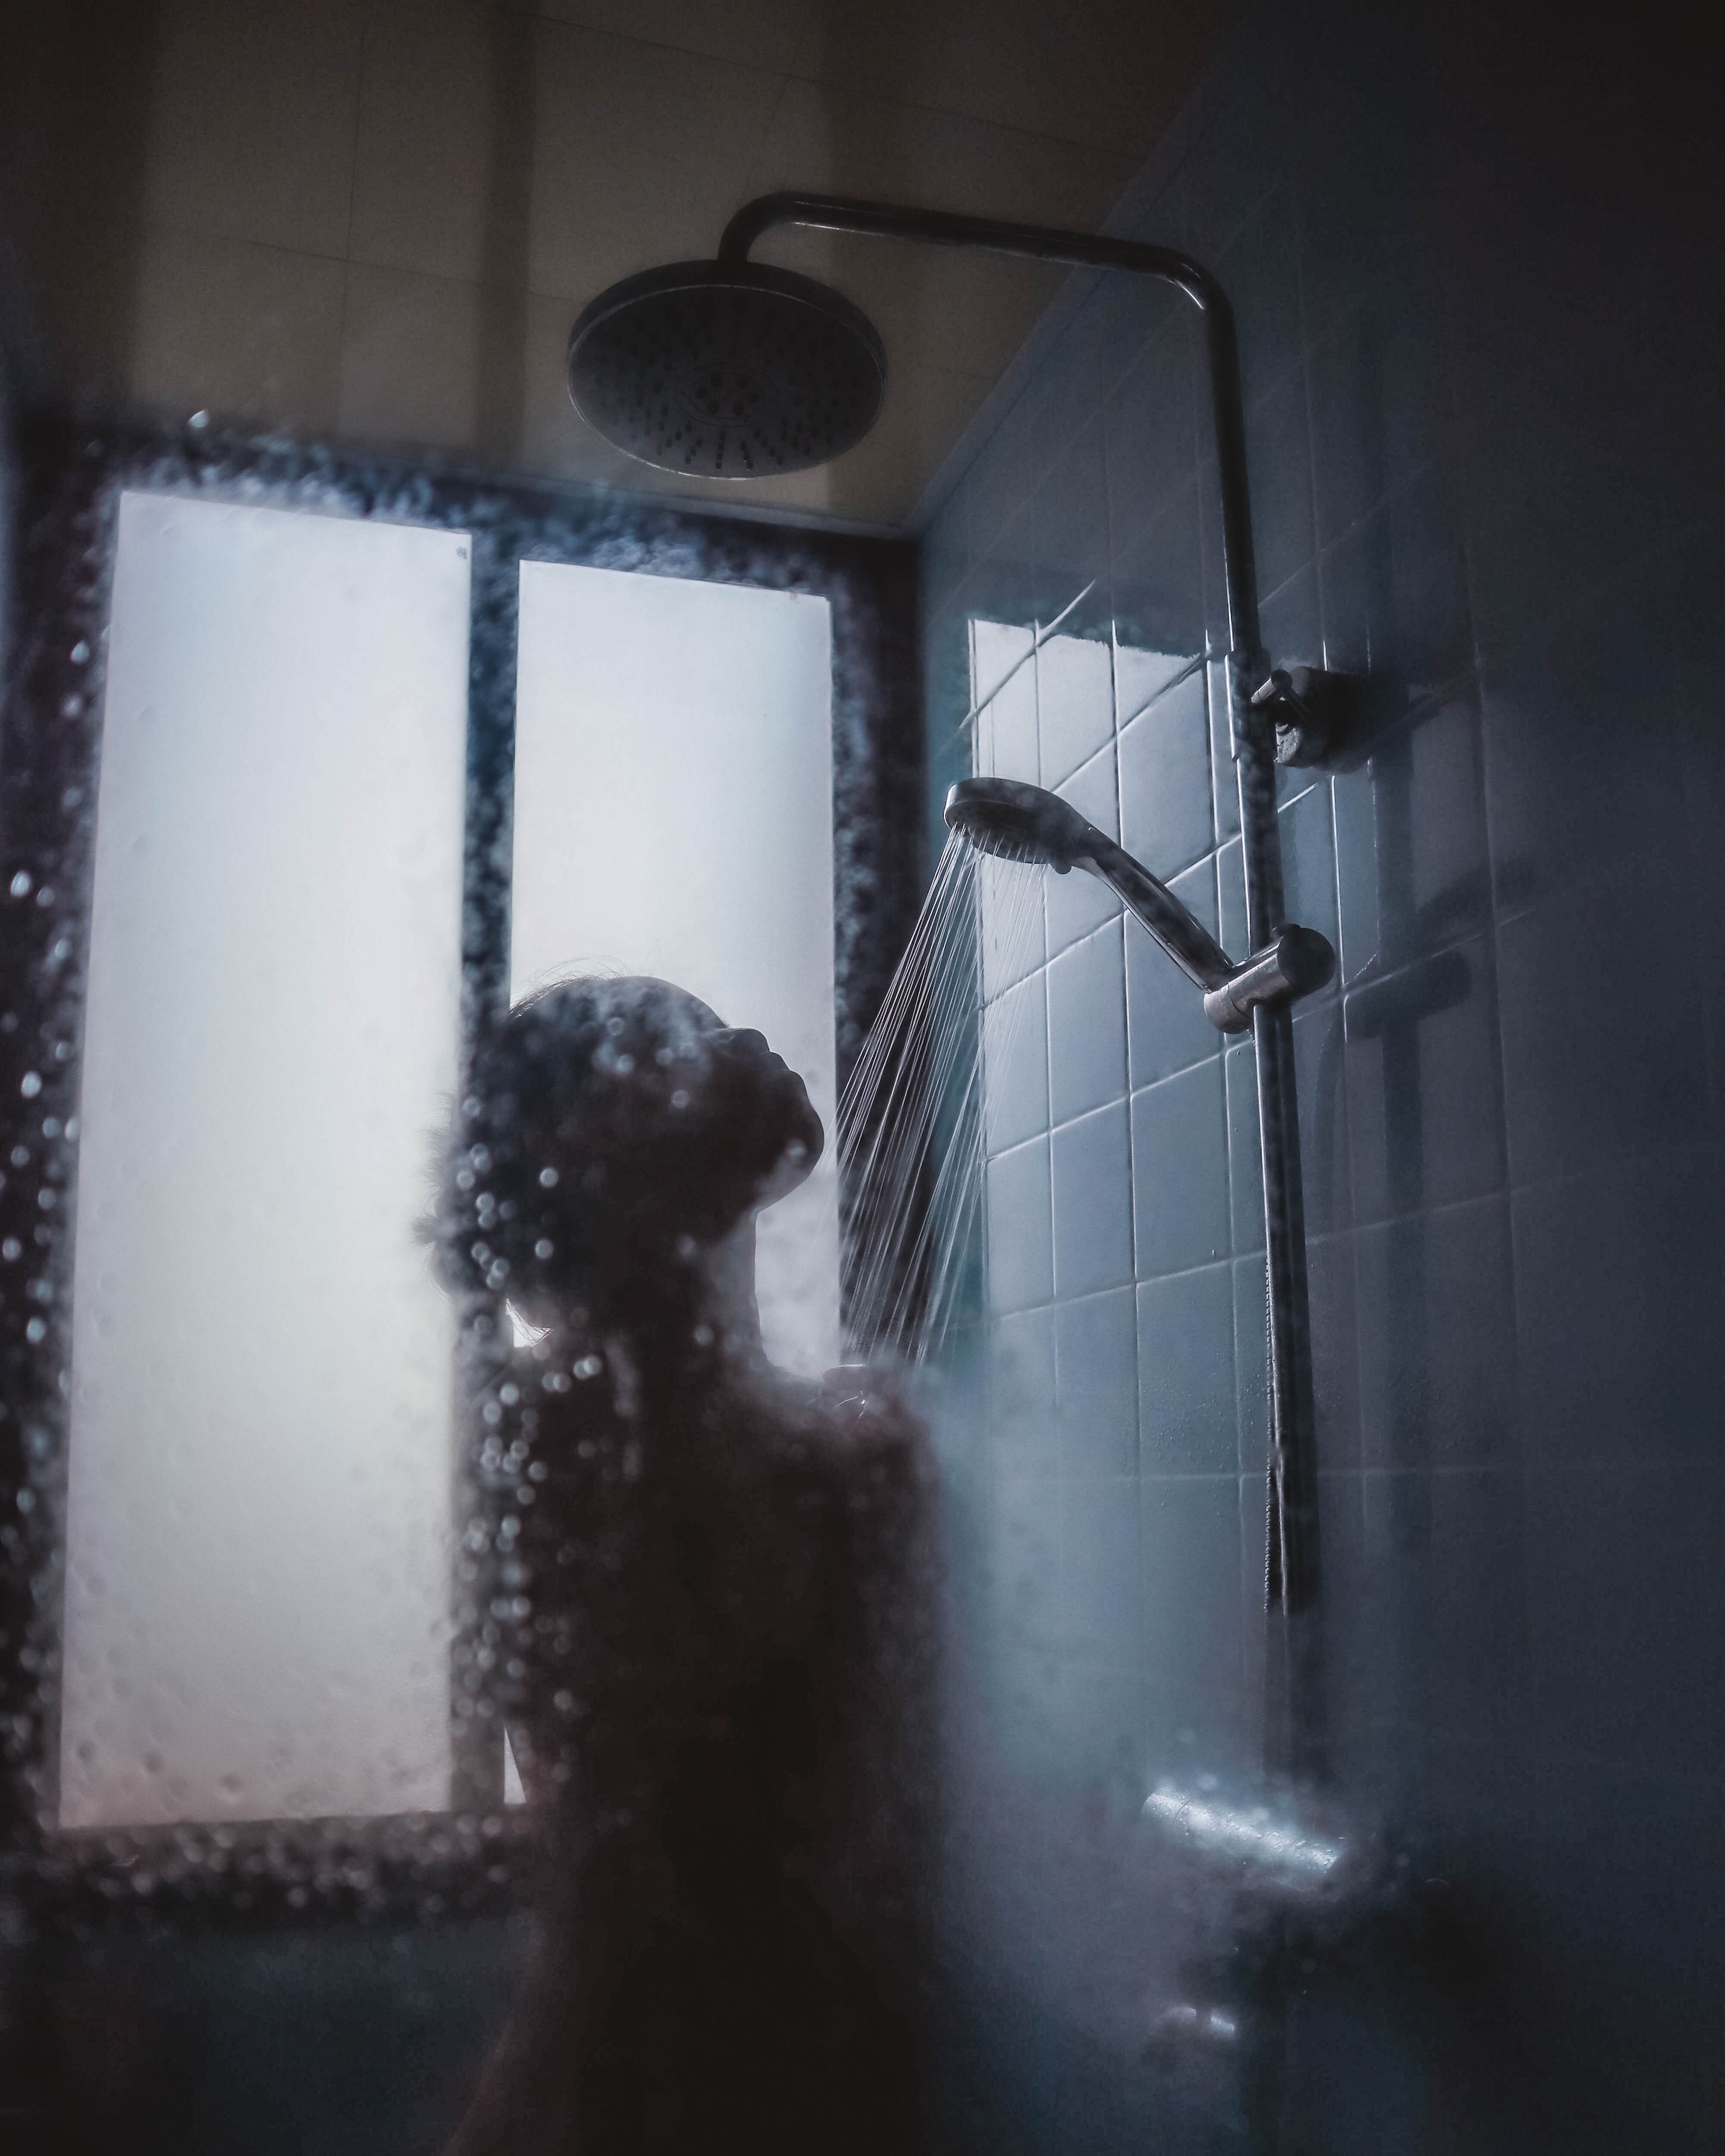 Une personne sous la douche | Source : Unsplash